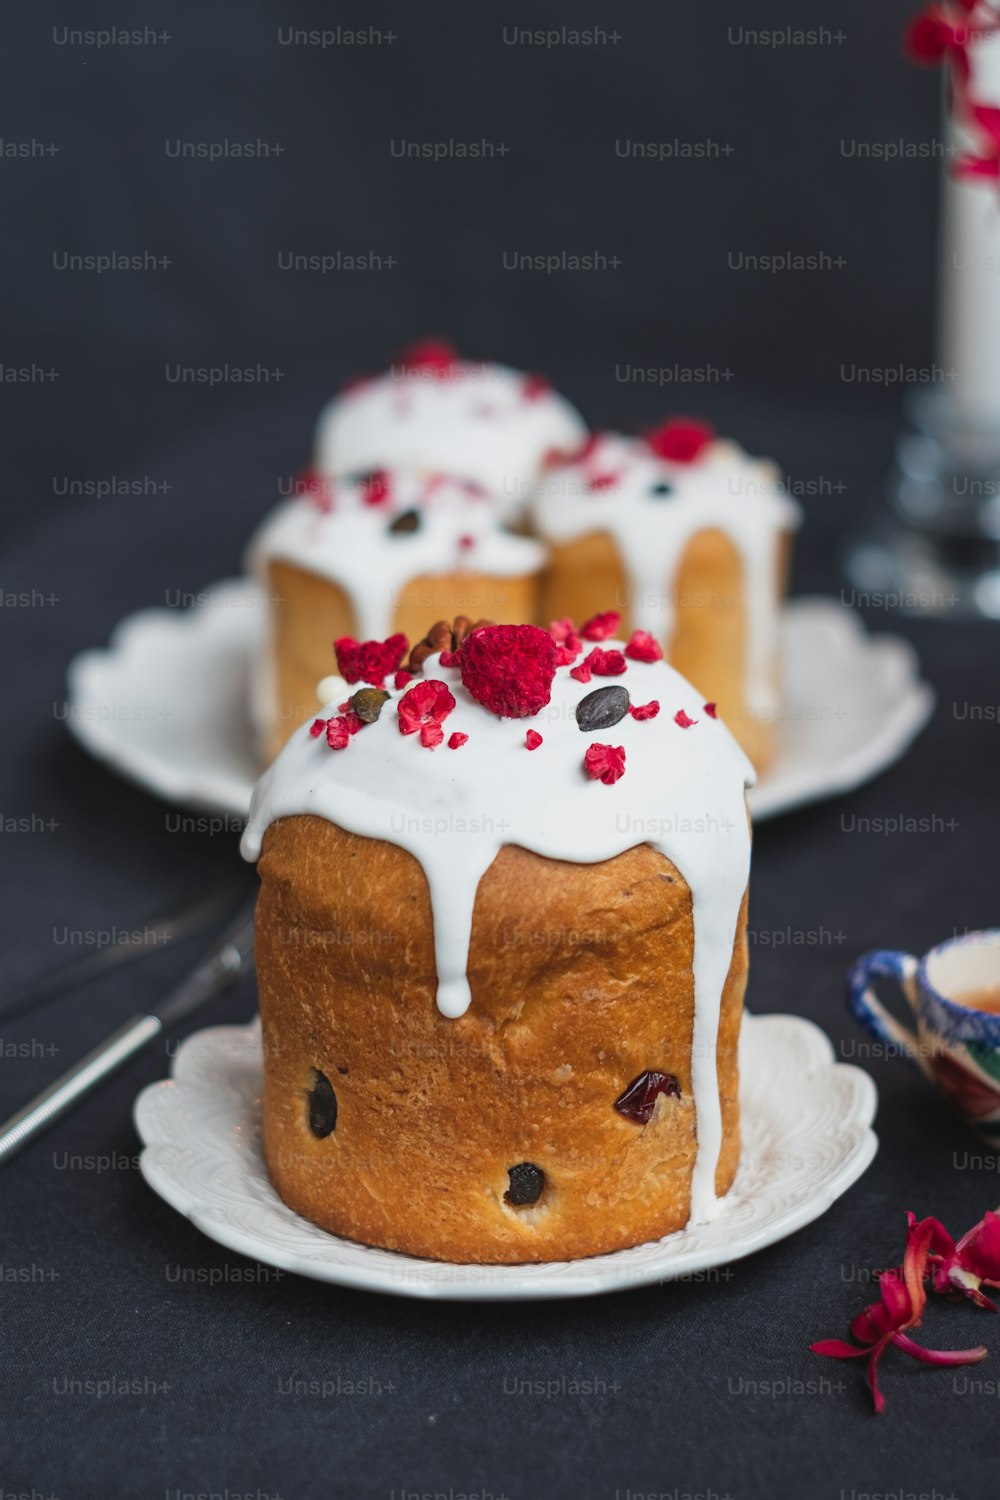 Un bundt cake con glaseado blanco y frambuesas por encima